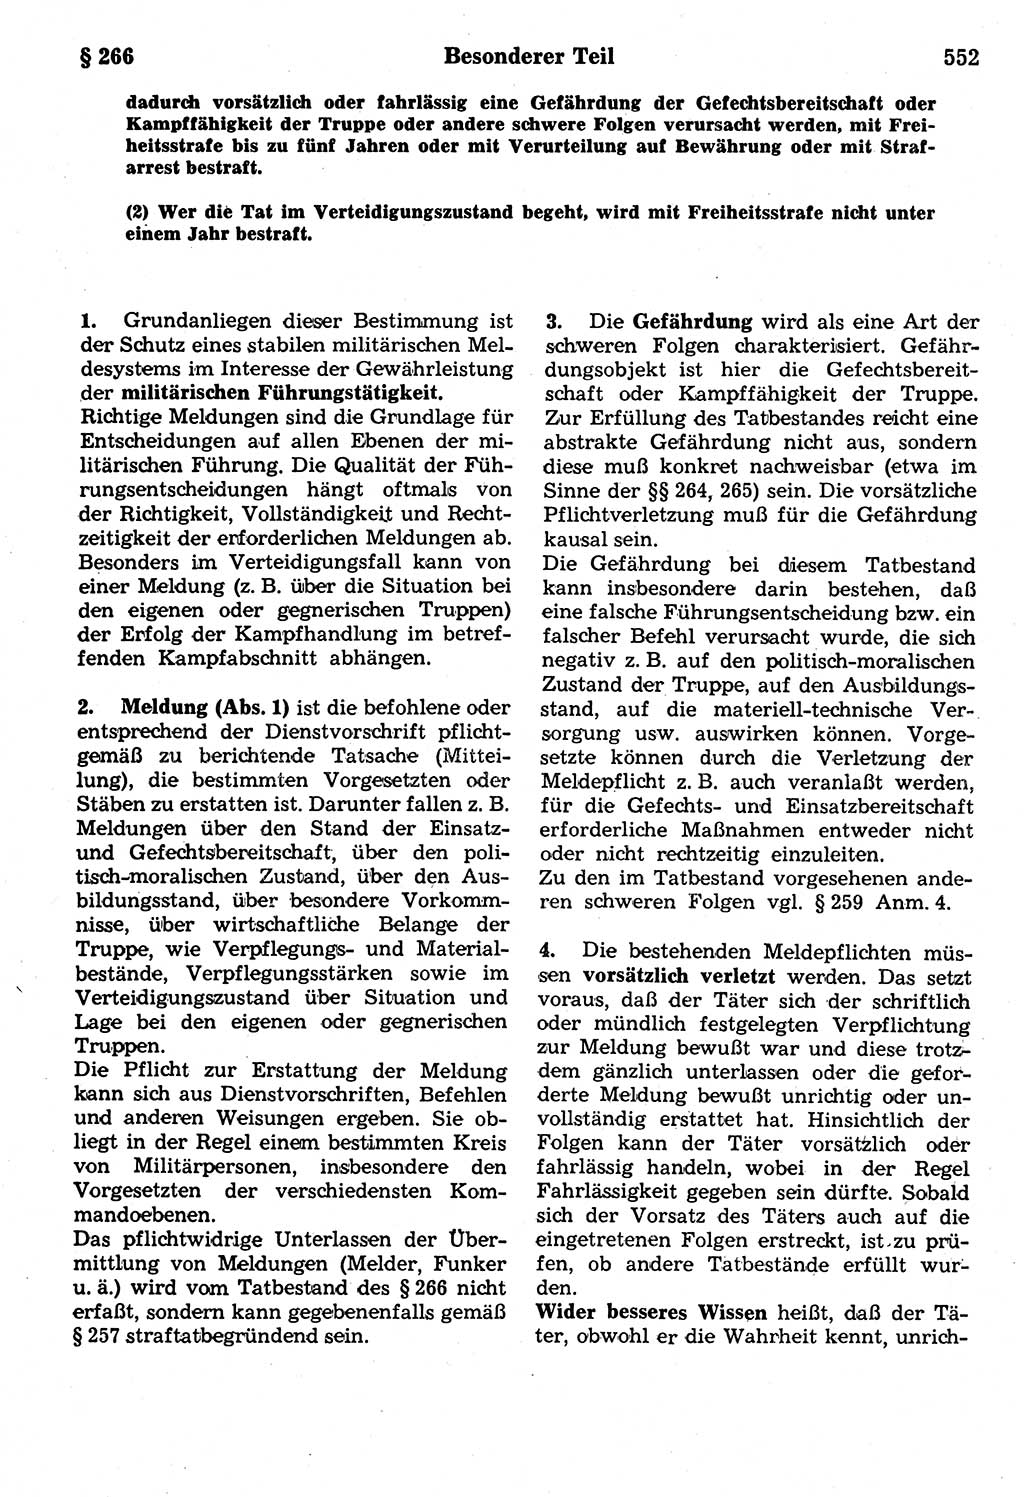 Strafrecht der Deutschen Demokratischen Republik (DDR), Kommentar zum Strafgesetzbuch (StGB) 1987, Seite 552 (Strafr. DDR Komm. StGB 1987, S. 552)